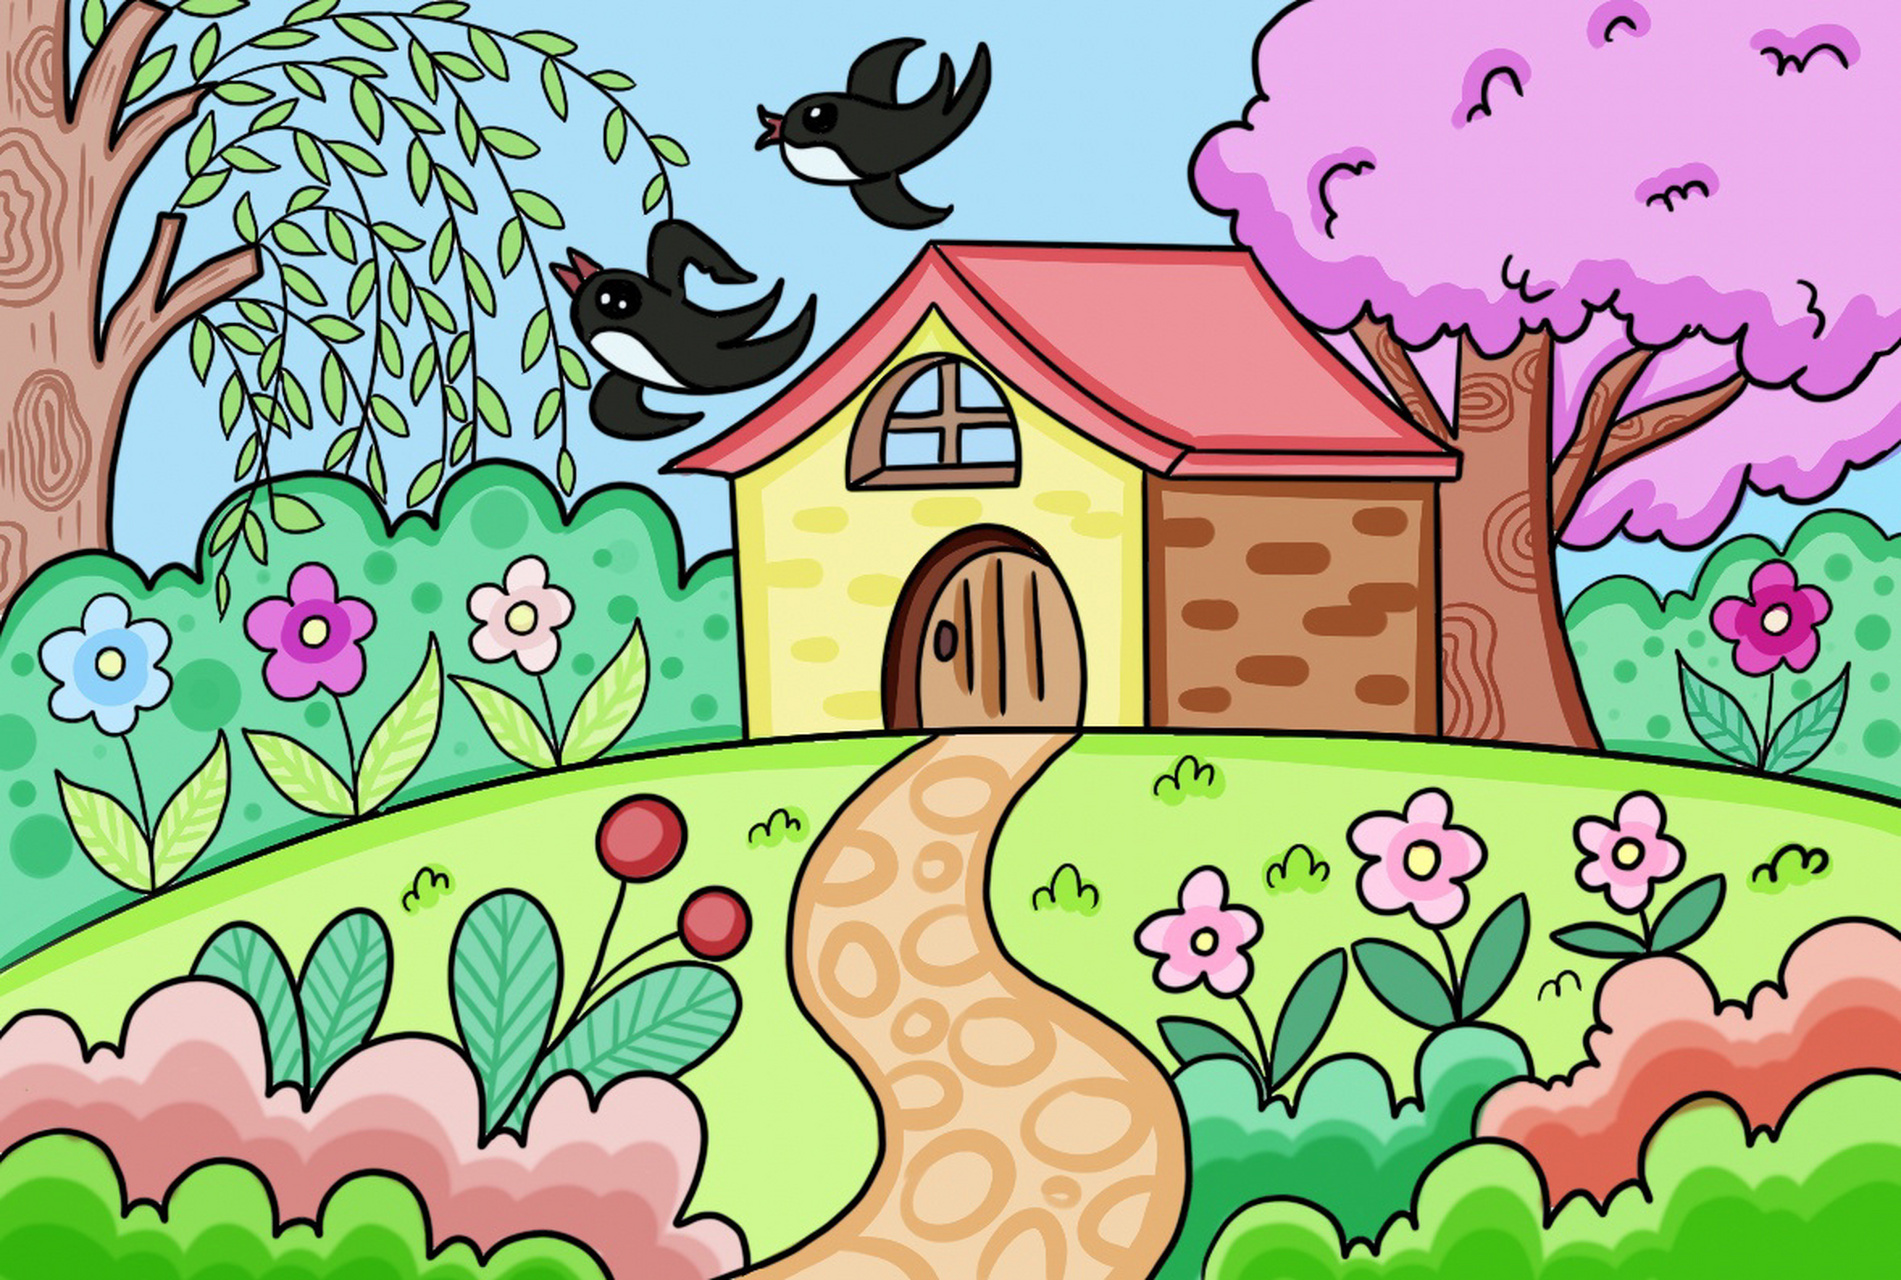 春天来了儿童画 房子卡通画主题花 春天来了儿童穿创意画